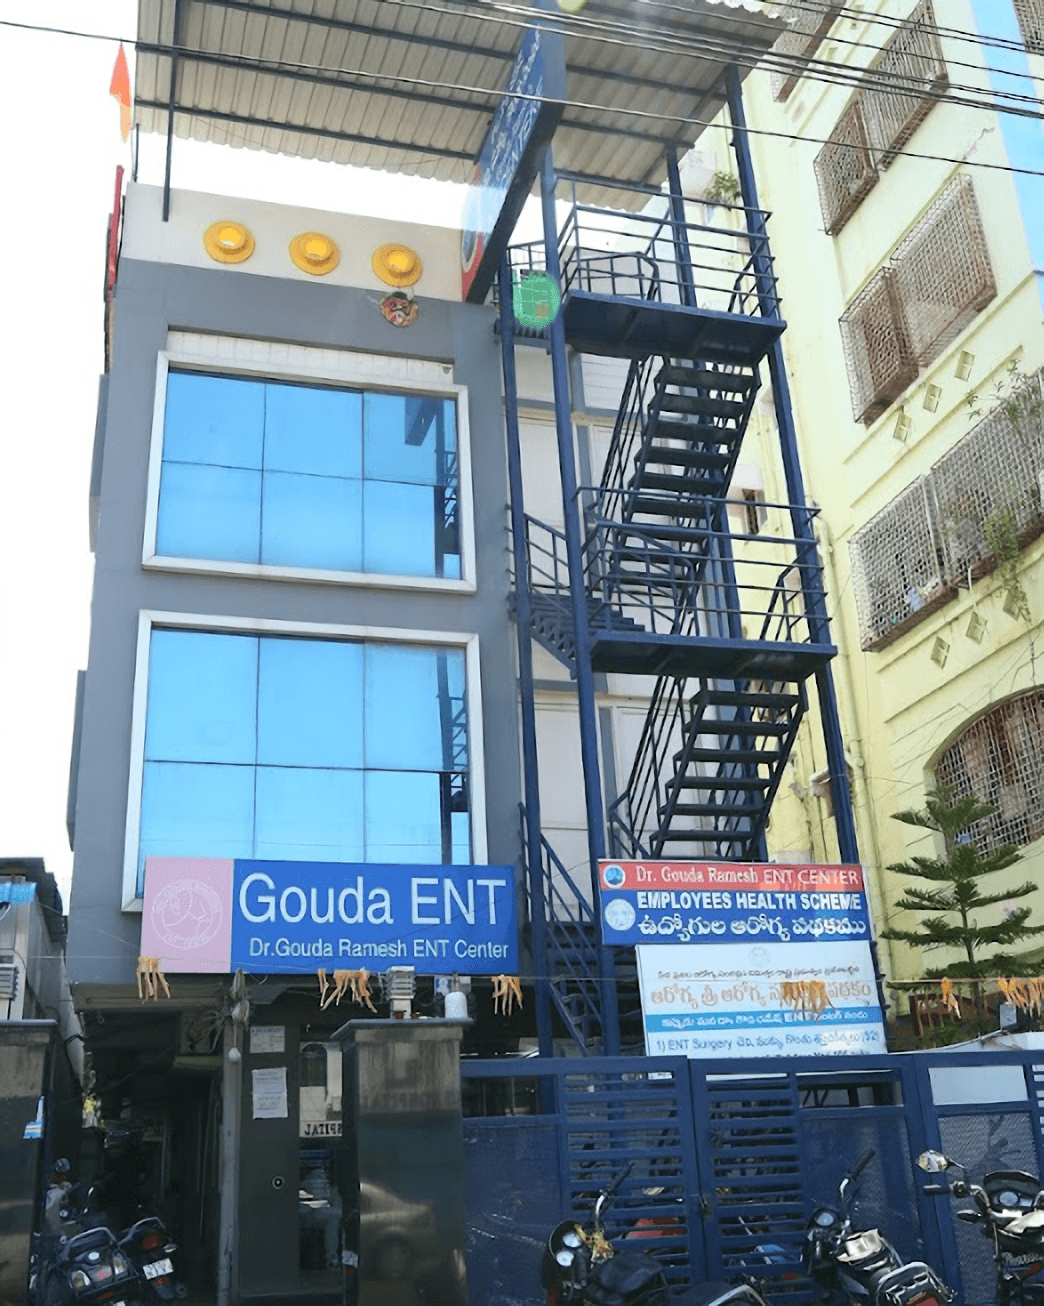 Dr. Gouda Ramesh ENT Center